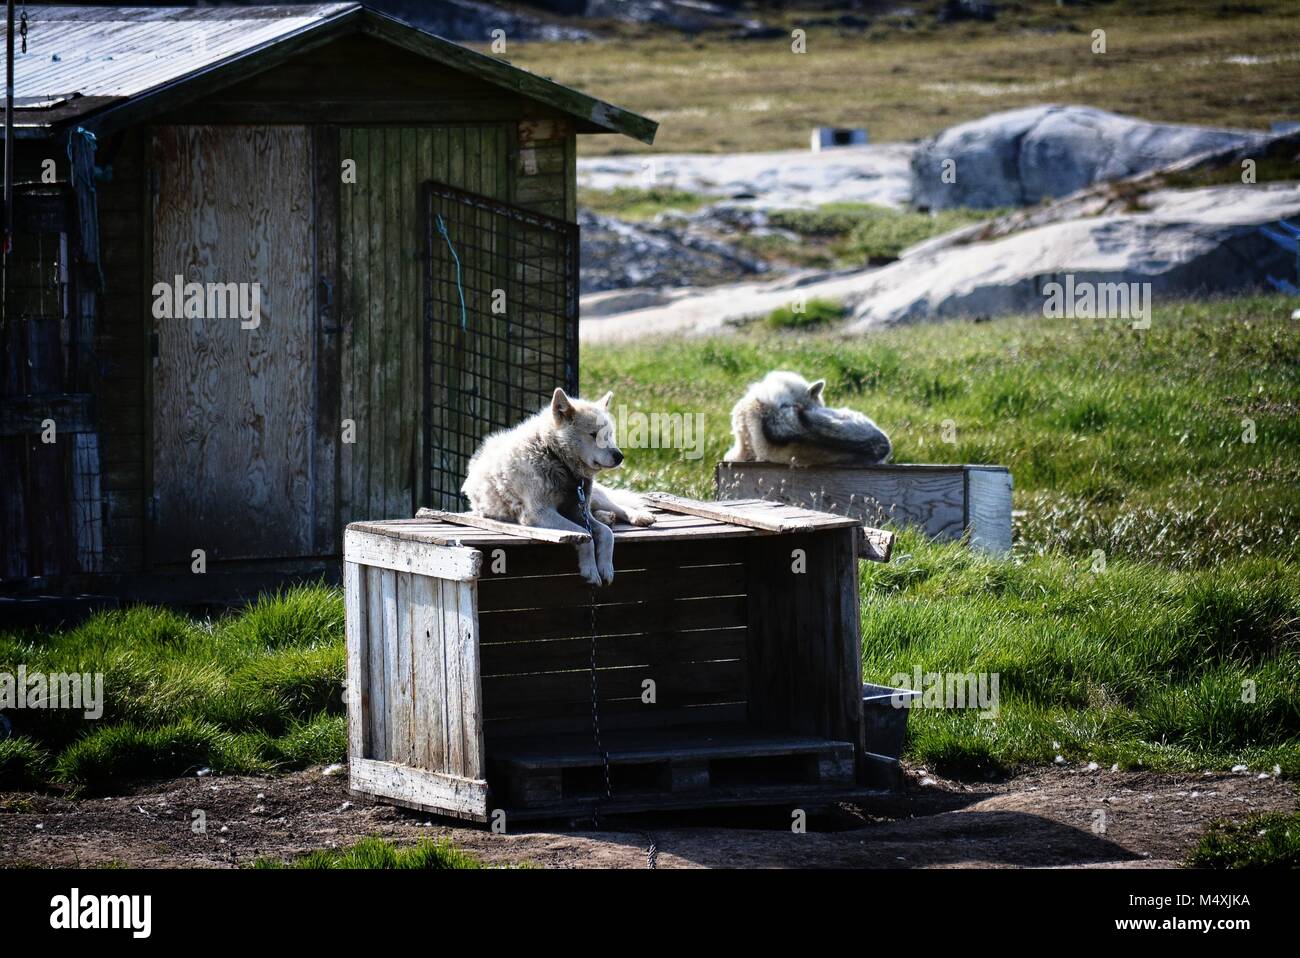 Groenlandia Huskies en Ilulissat, Groenlandia - perro gendoso encadenado esperando rexing en un día caluroso del verano en julio Foto de stock